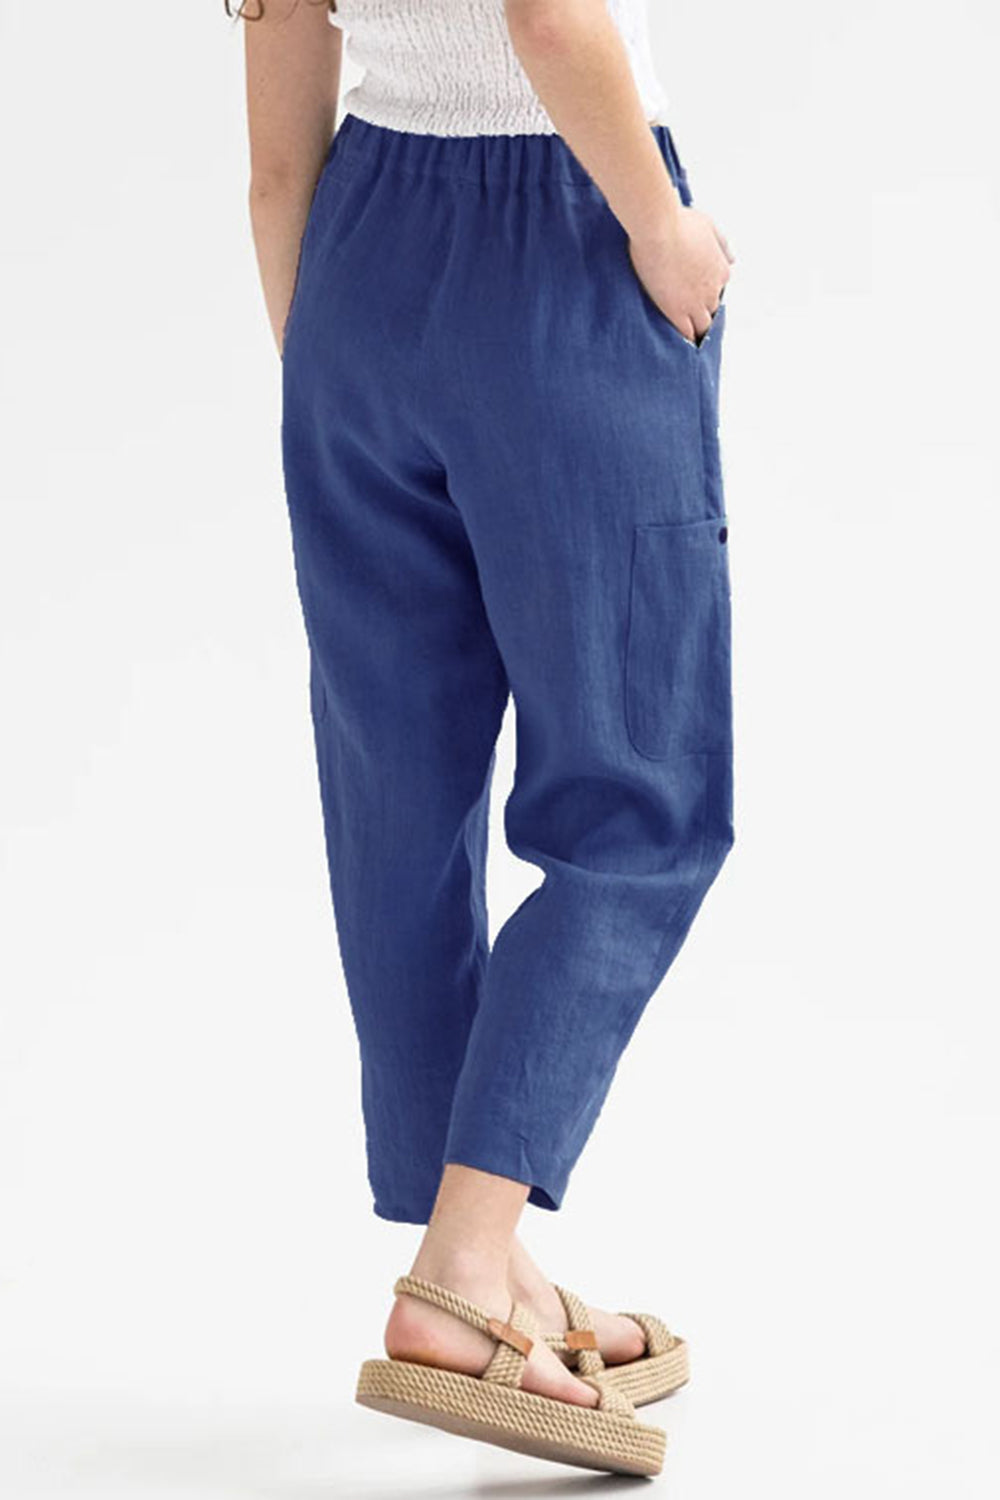 TEEK - Pocketed Elastic Waist Pants PANTS TEEK Trend Navy S 